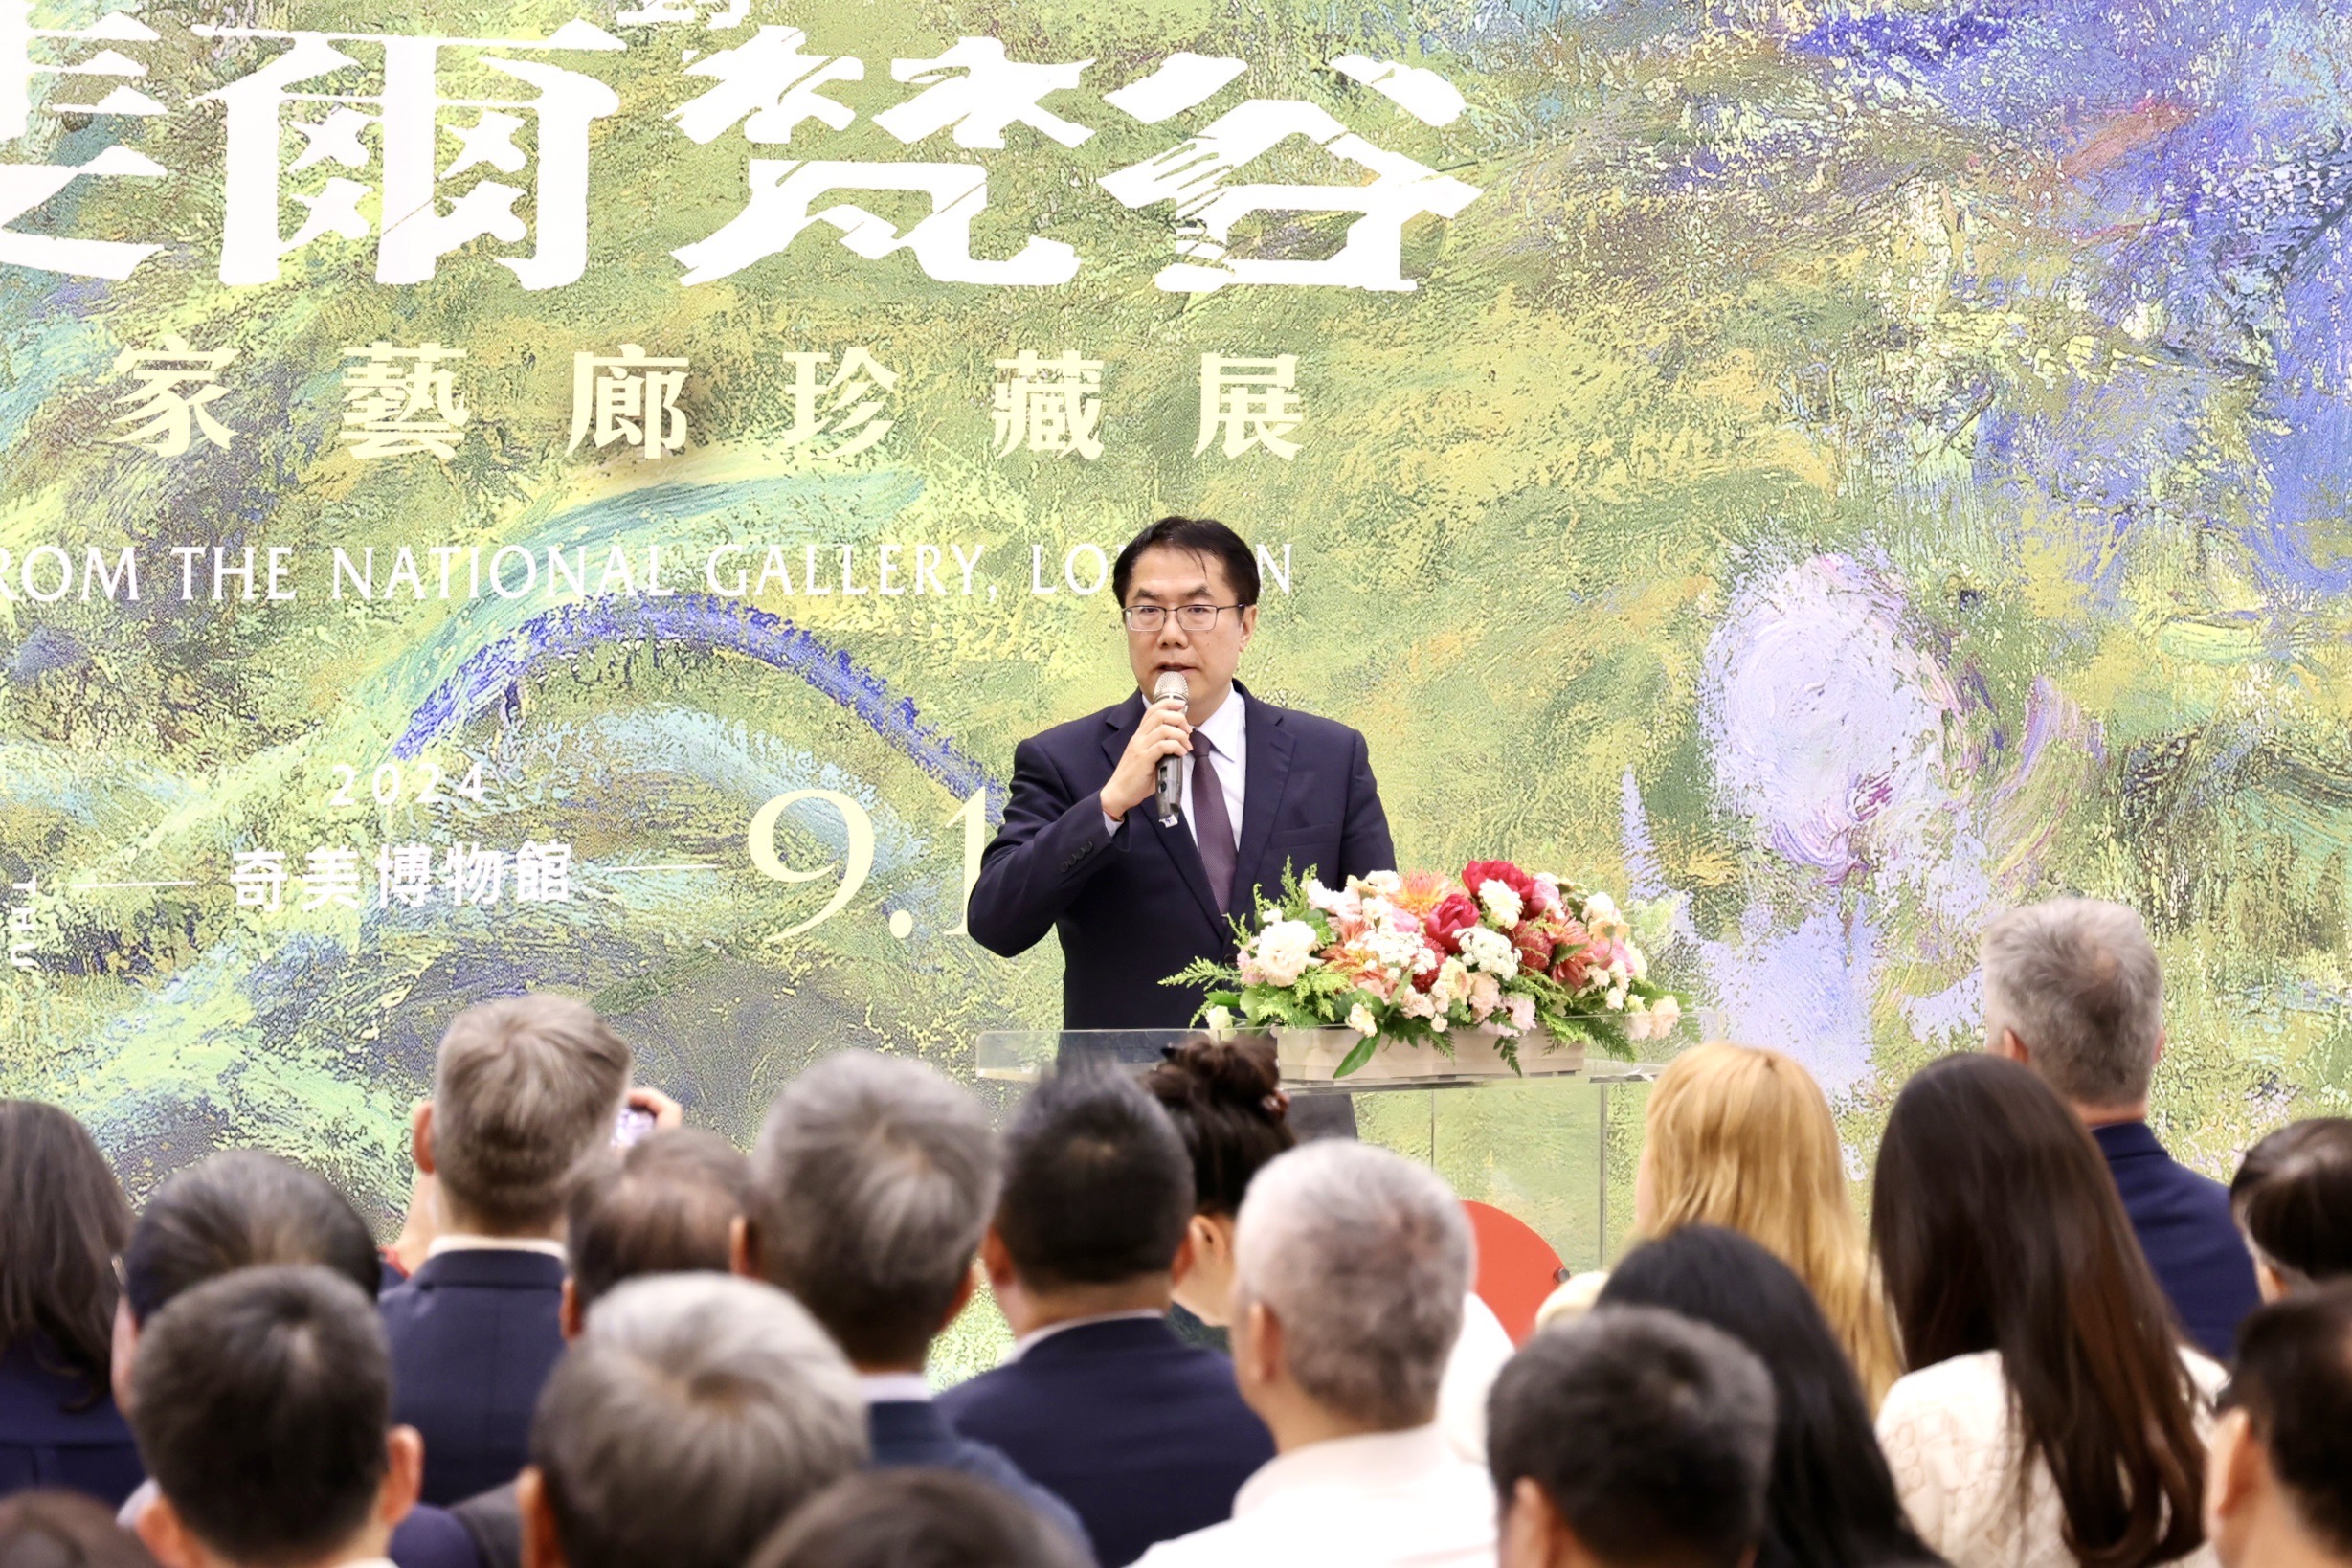 台南市長受邀出席《英國國家藝廊珍藏展》展前開幕典禮